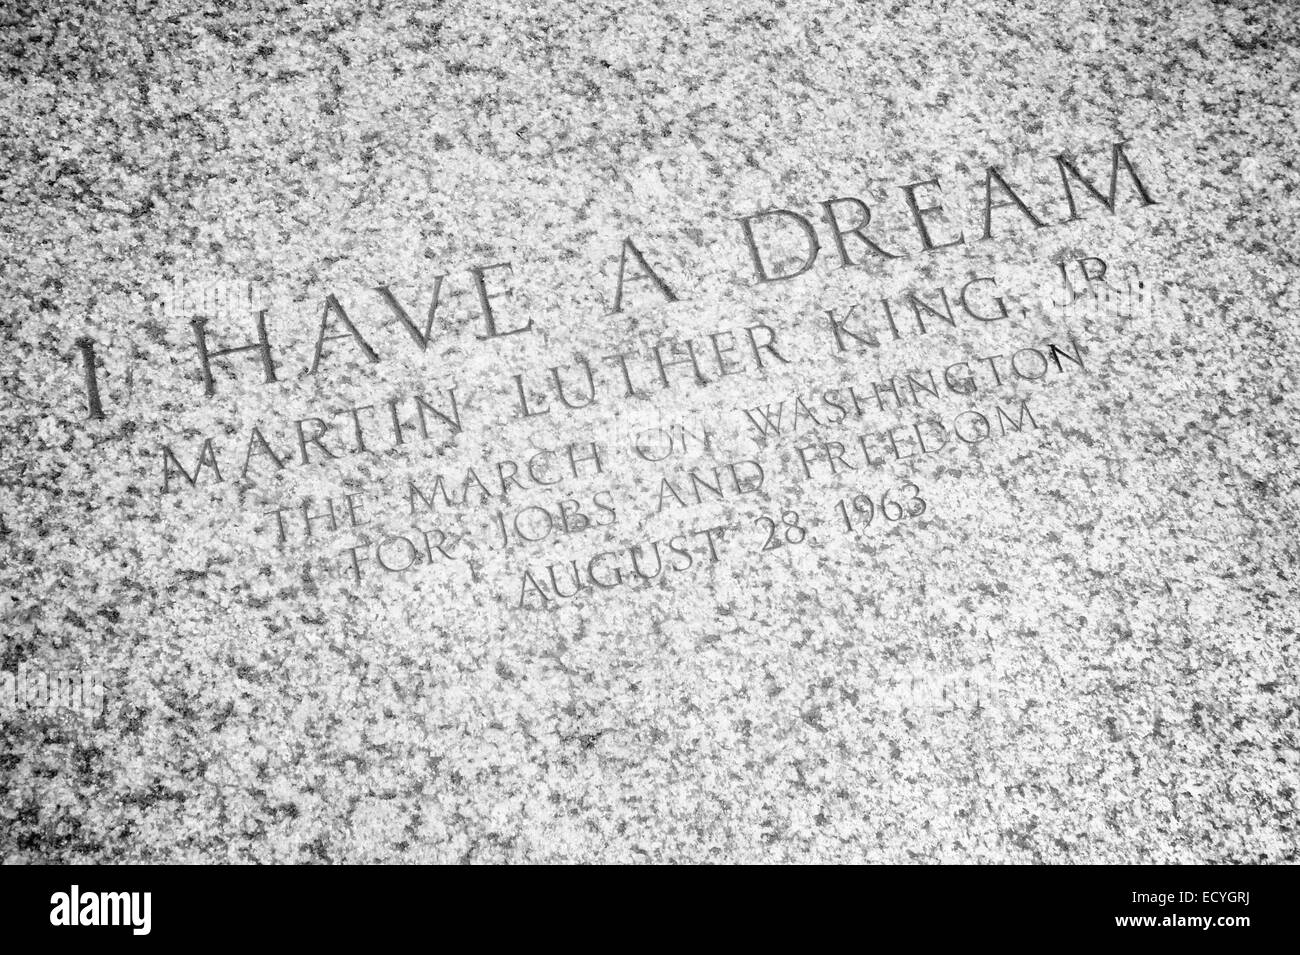 WASHINGTON DC, USA - 30. Juli 2014: "I Have a Dream" Zitat von Martin Luther King eingraviert auf den Stufen des Lincoln Memorial. Stockfoto